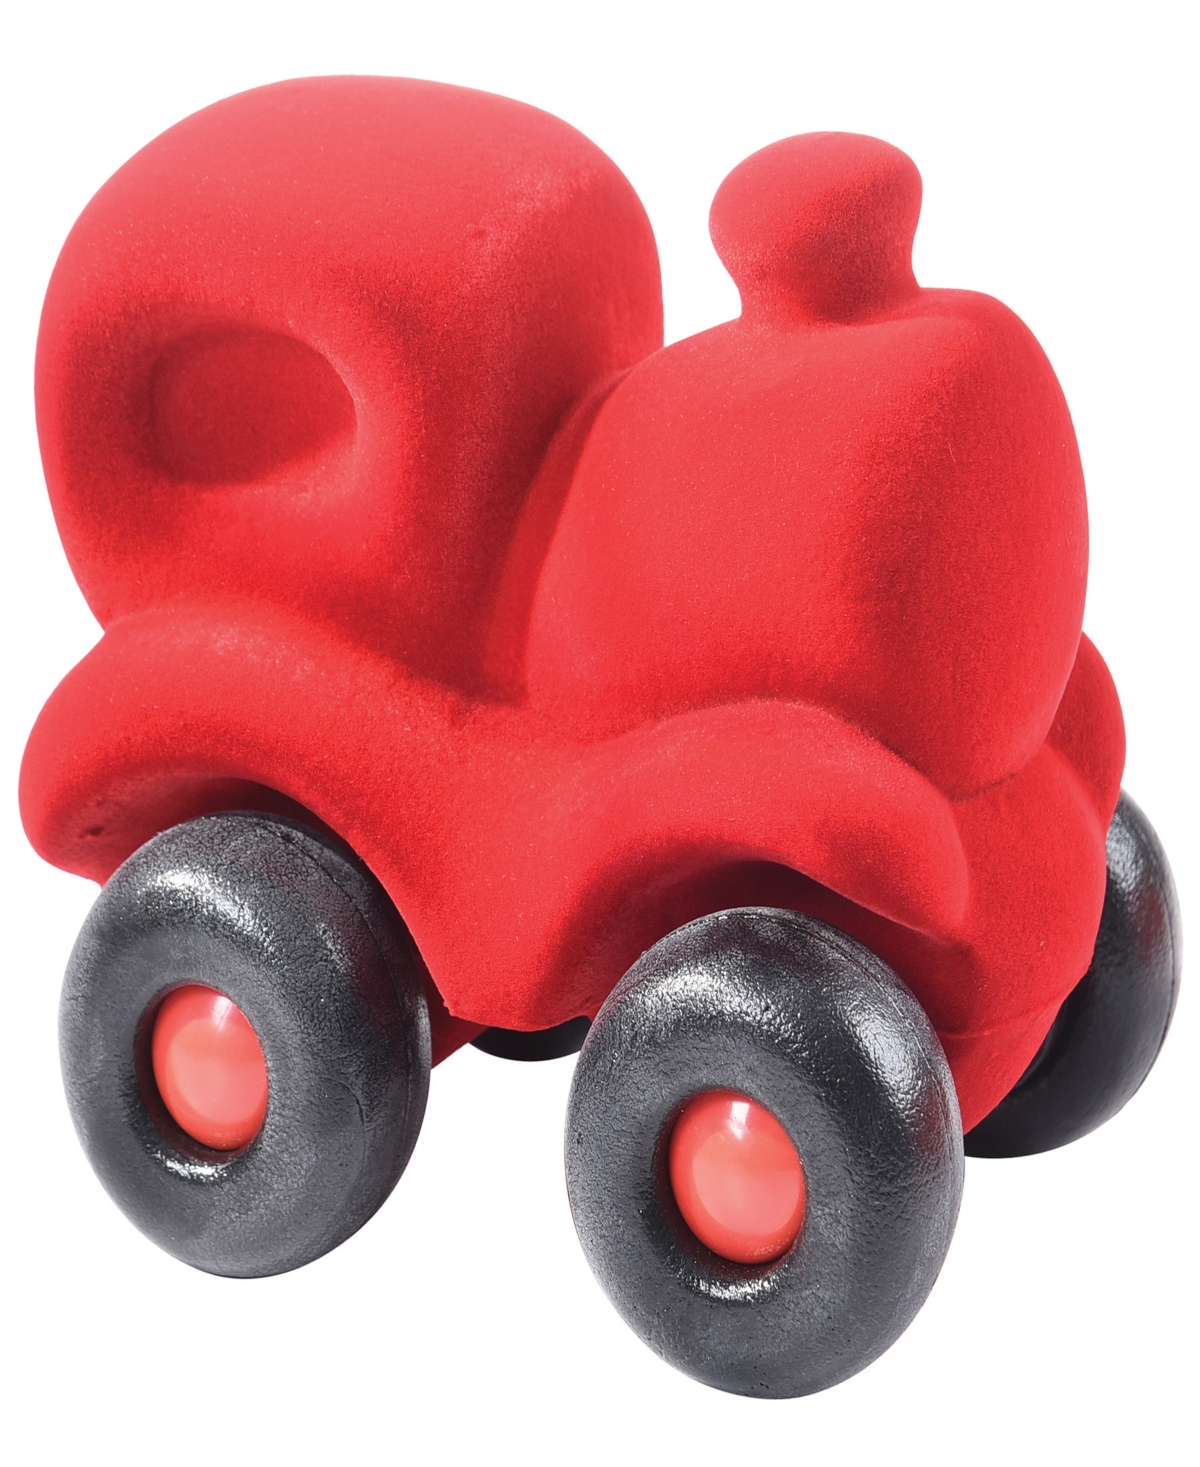 Rubbabu Babies' Red Choo Choo Toy Train In Multi